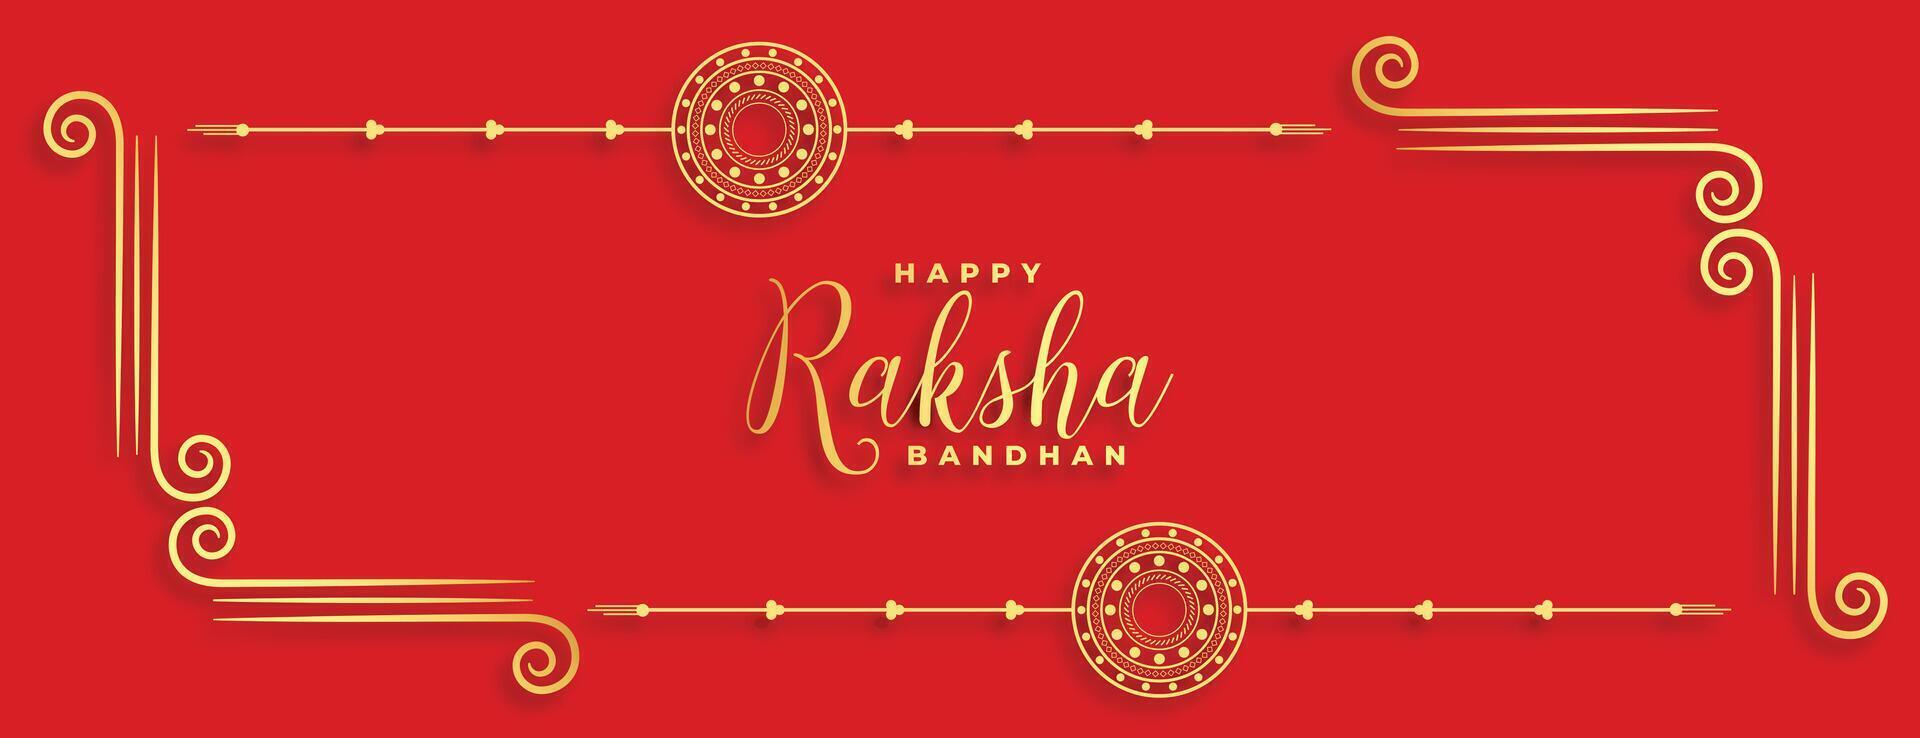 traditionell indisk Raksha bandhan festival röd baner design vektor